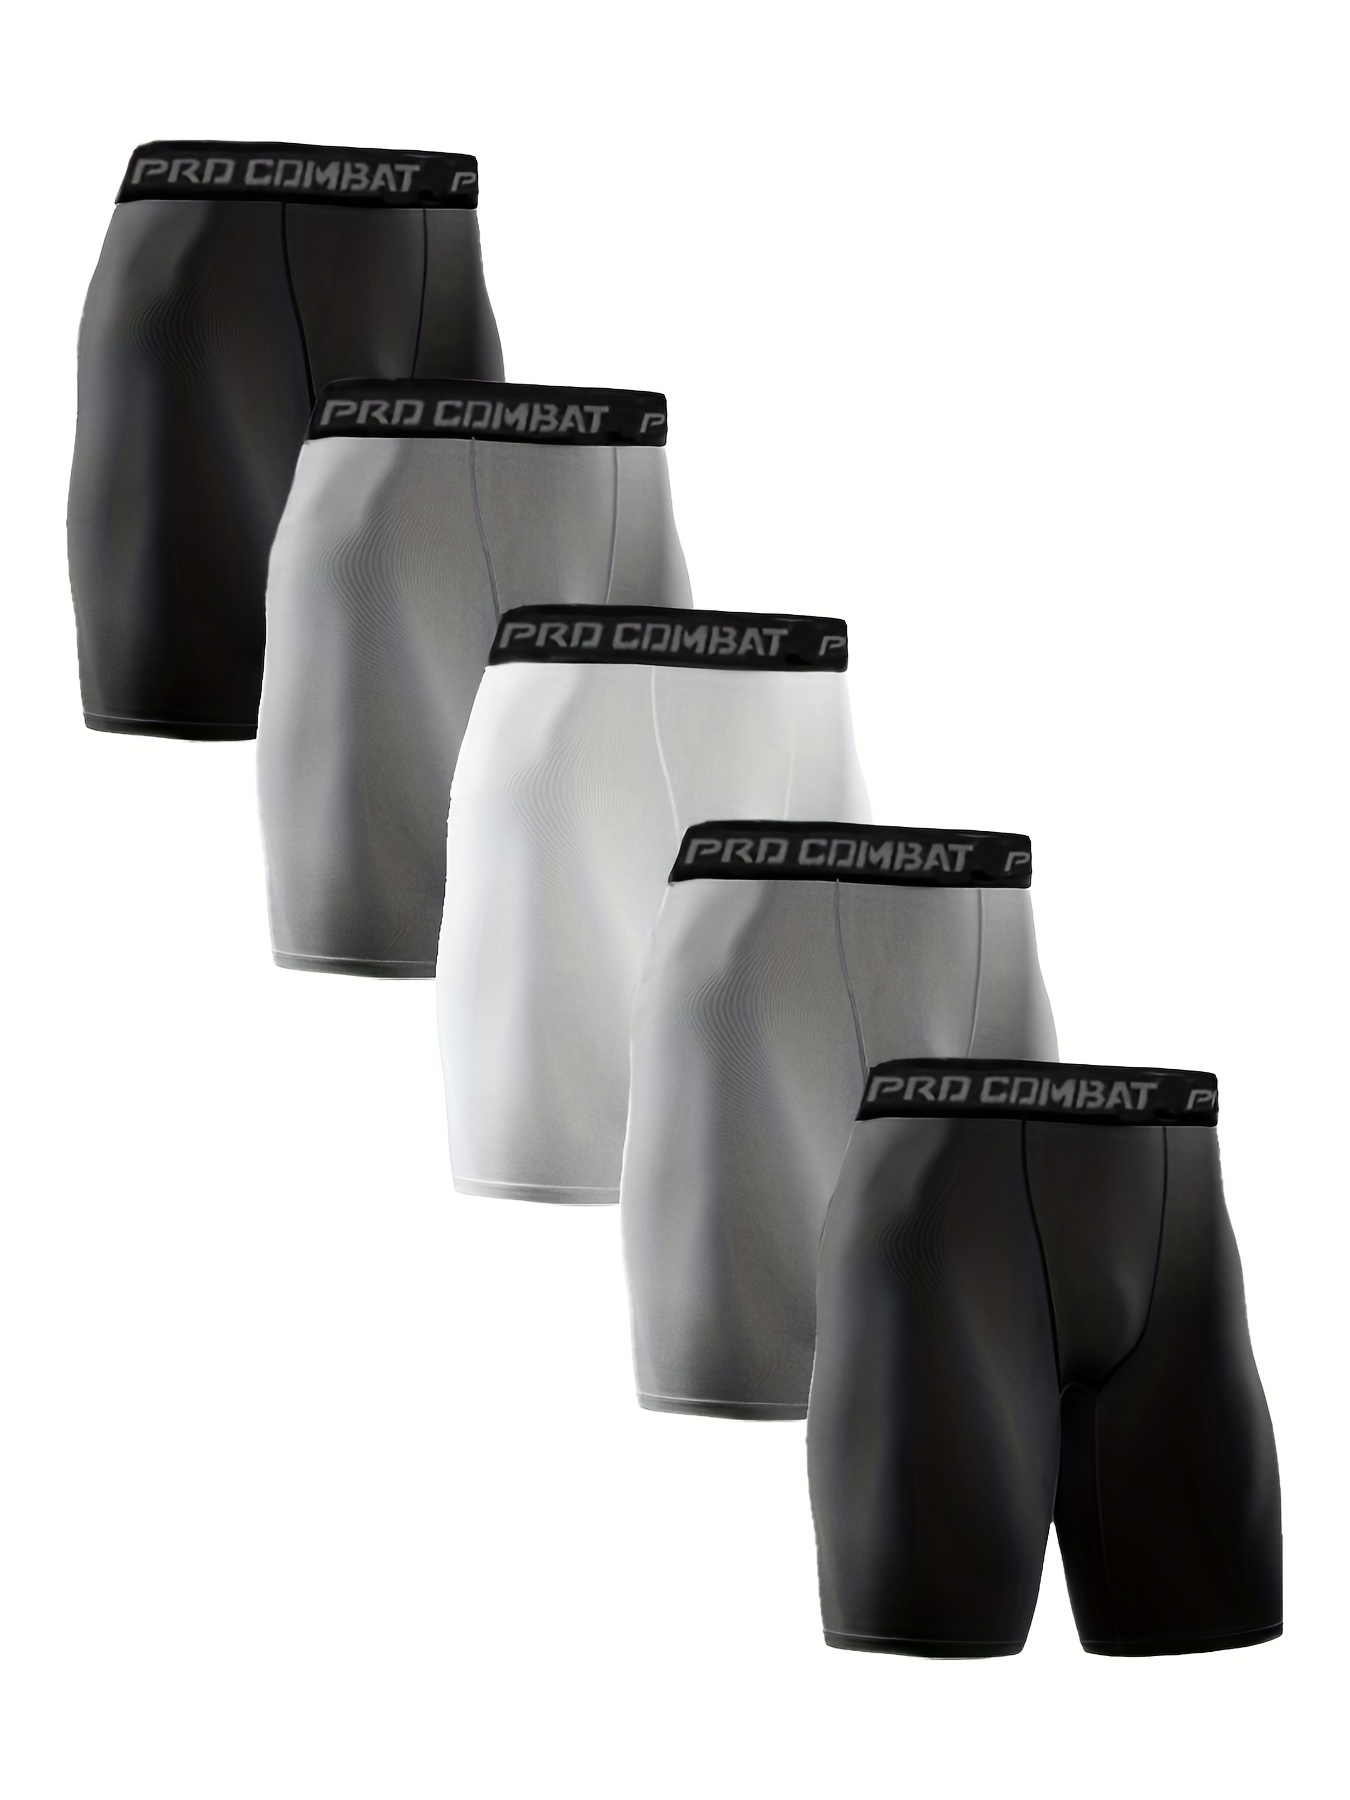 Scarboro Men's Underwear Adjustable Waist Trainer Shorts - Temu